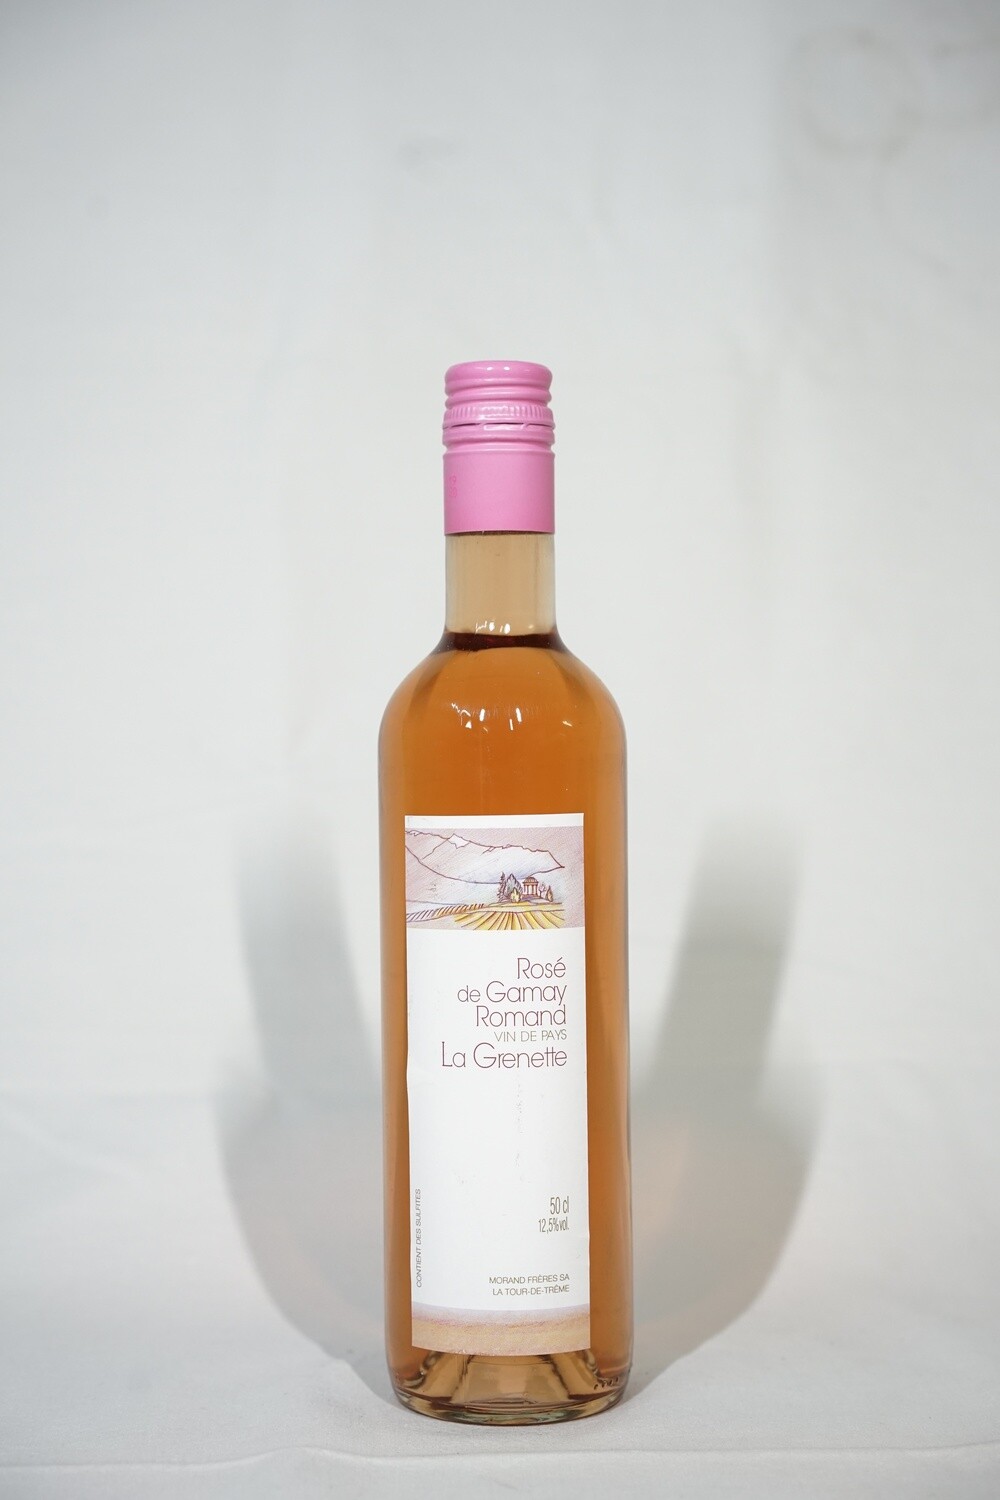 Rosé de Gamay, Romand vin de pays, La Grenette 50 cl